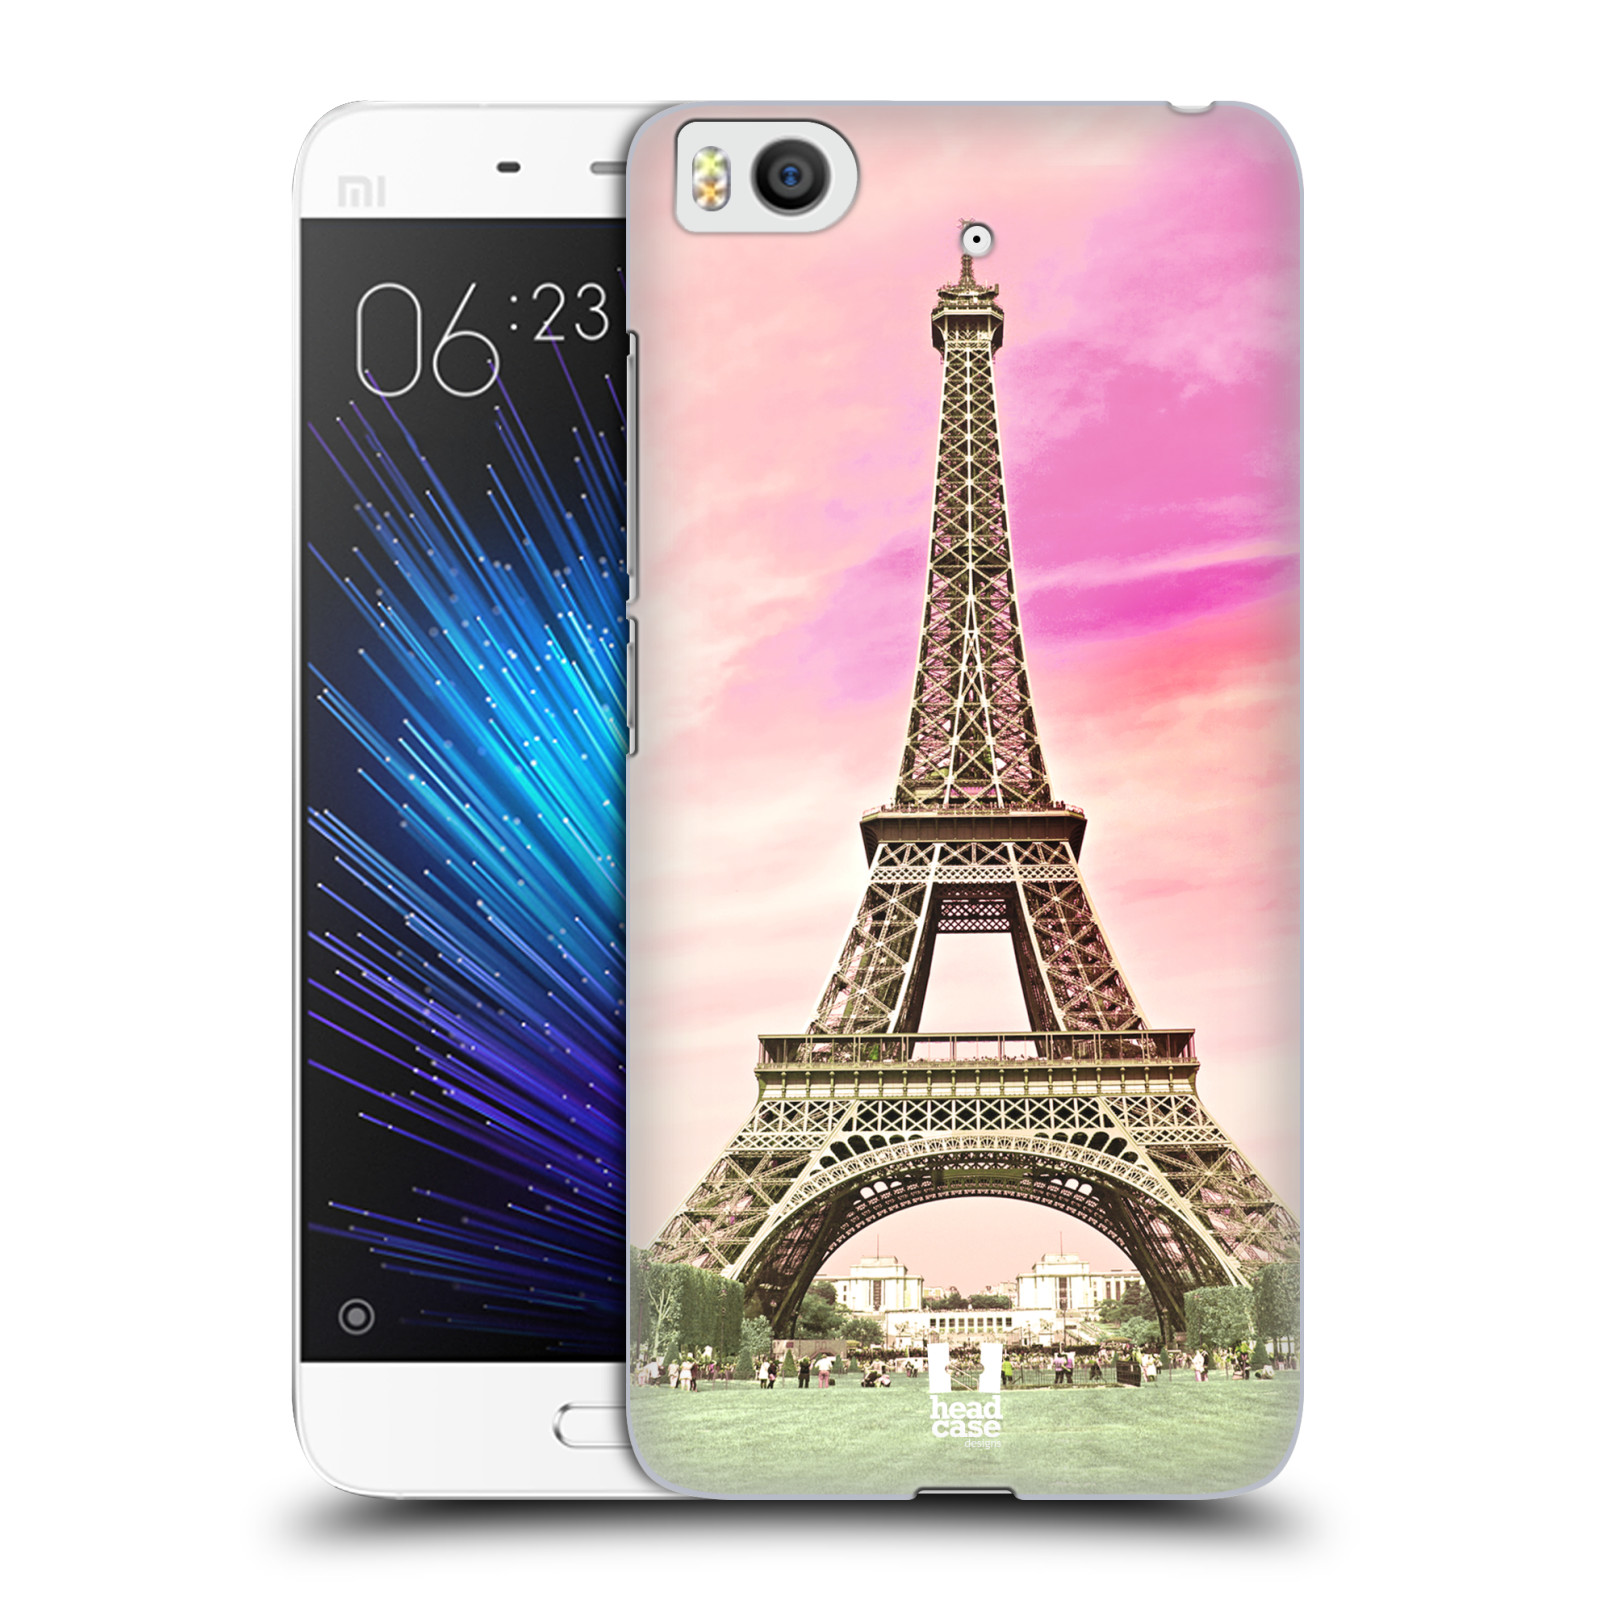 Pouzdro na mobil Xiaomi Mi5s - HEAD CASE - historická místa Eiffelova věž Paříž